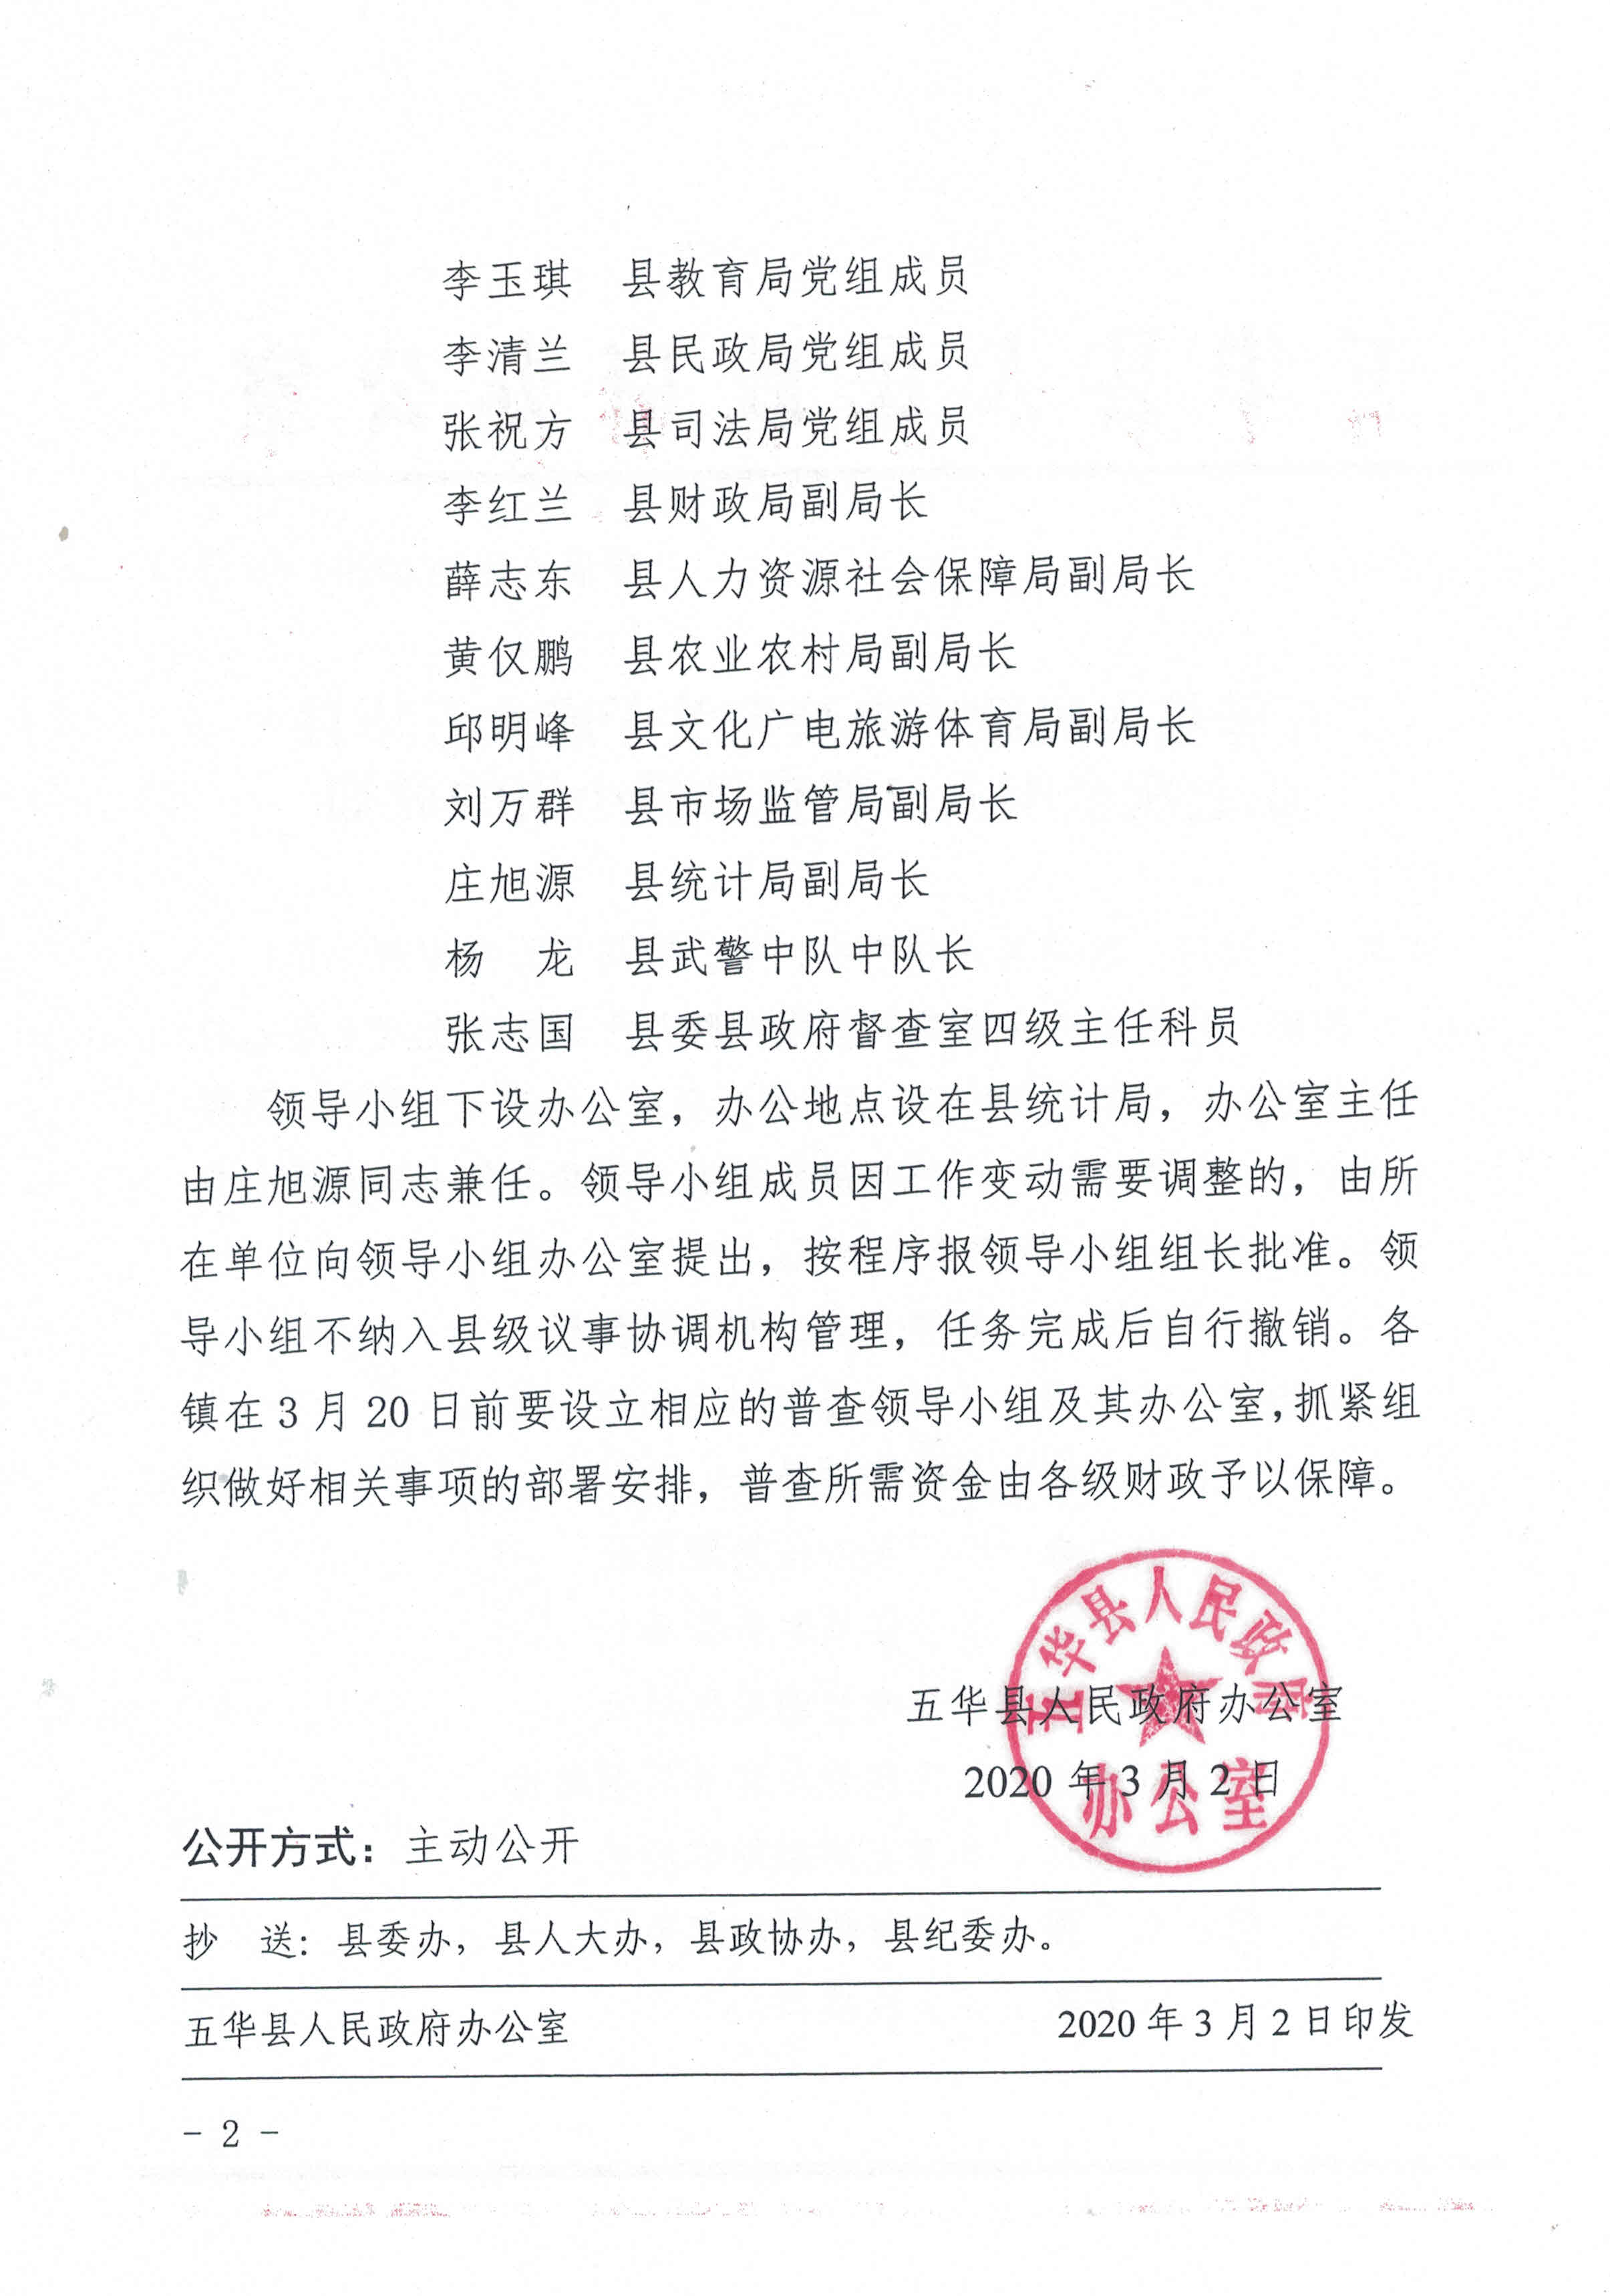 五华县人民政府办公室关于成立五华县第七次全国人口普查领导小组的通知1.jpg